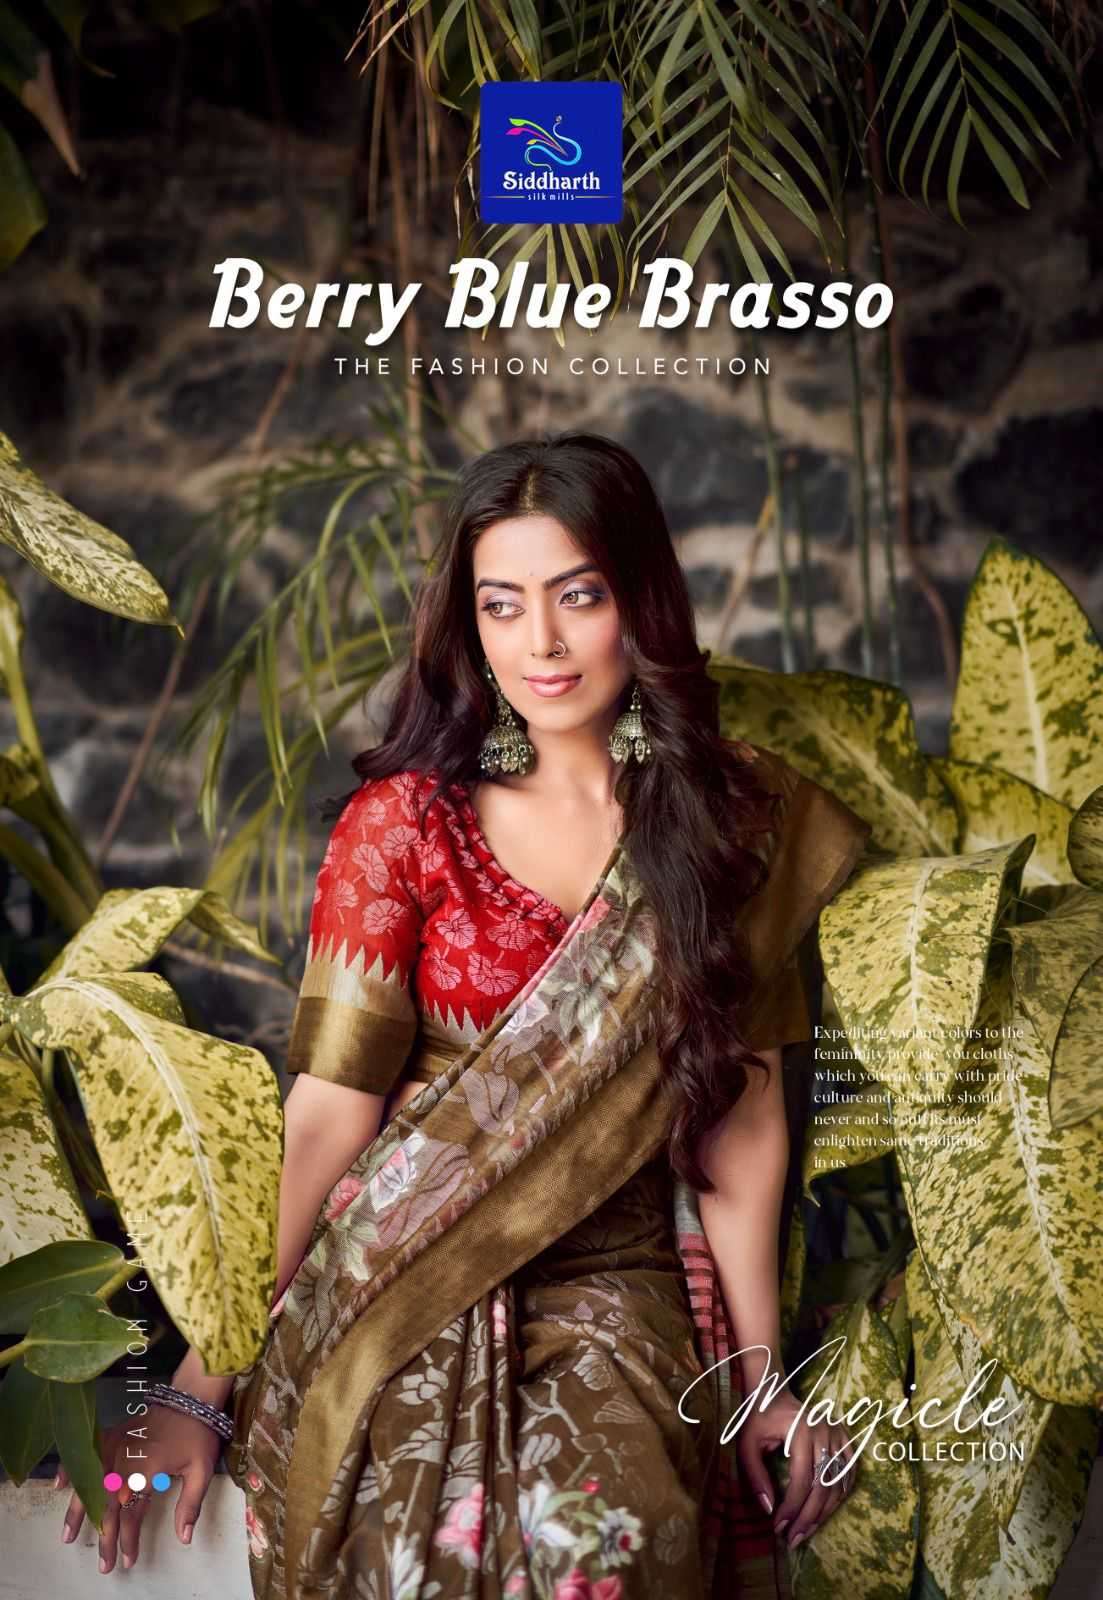 siddharth silk mills berry blue brasso series 3101-3109 brasso saree